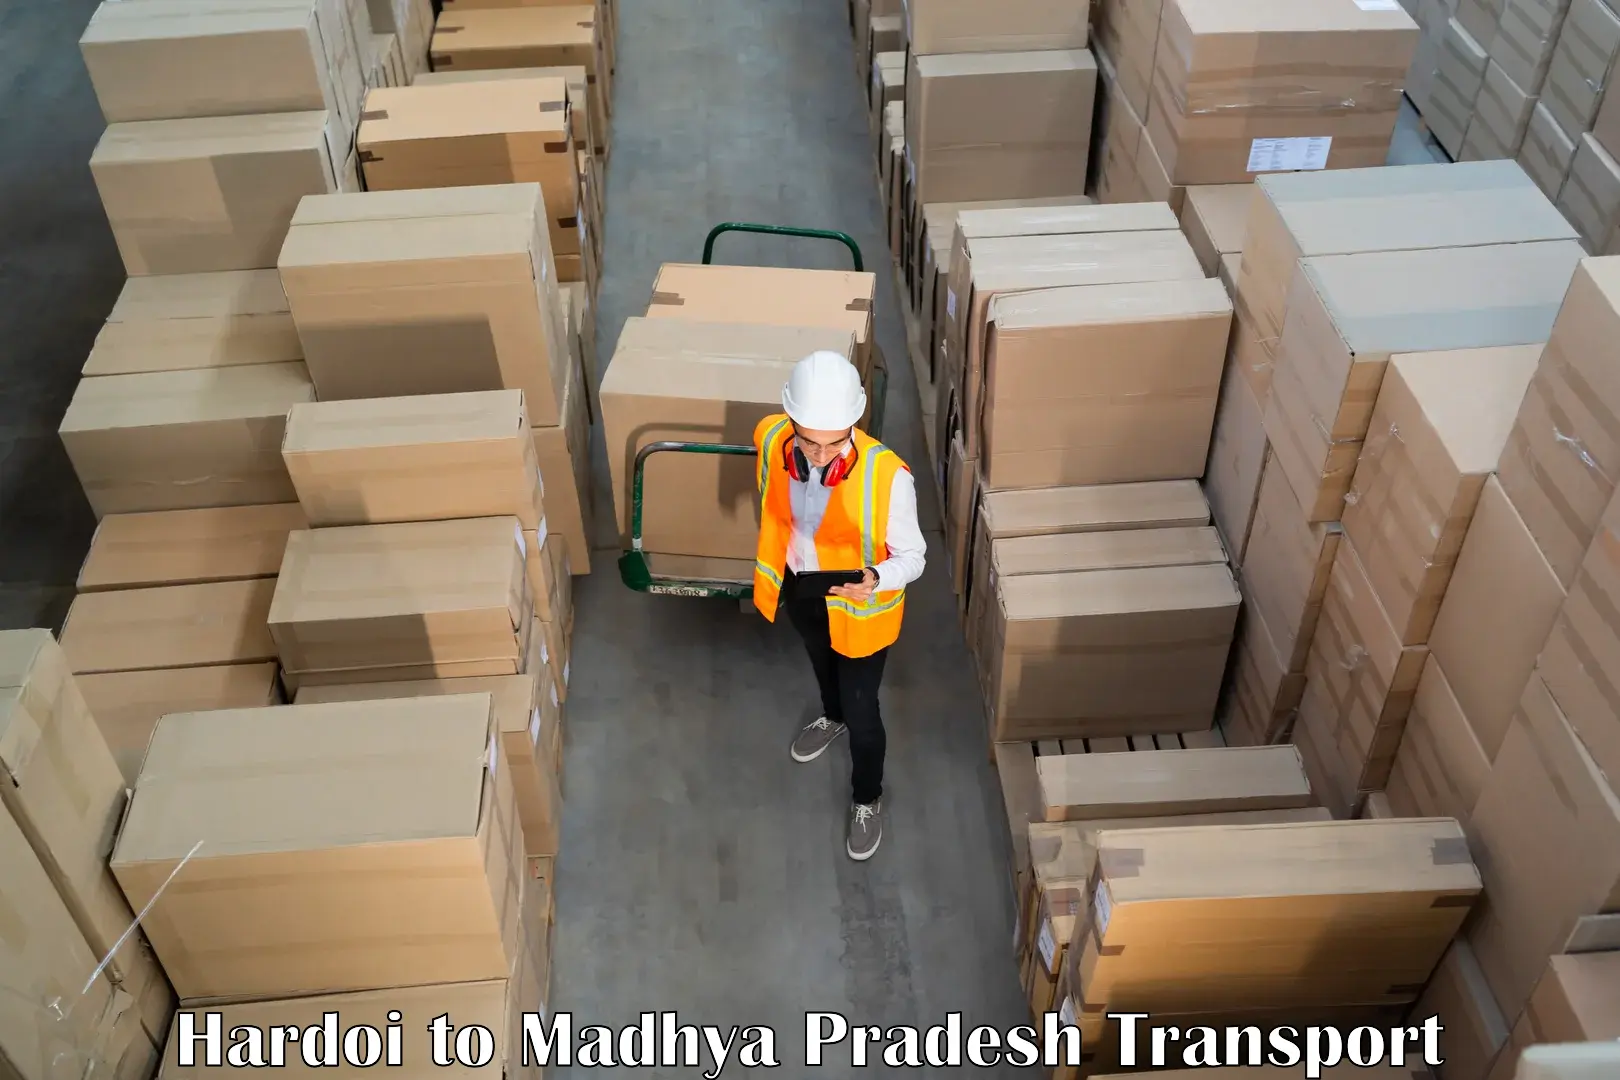 Truck transport companies in India Hardoi to Waraseoni